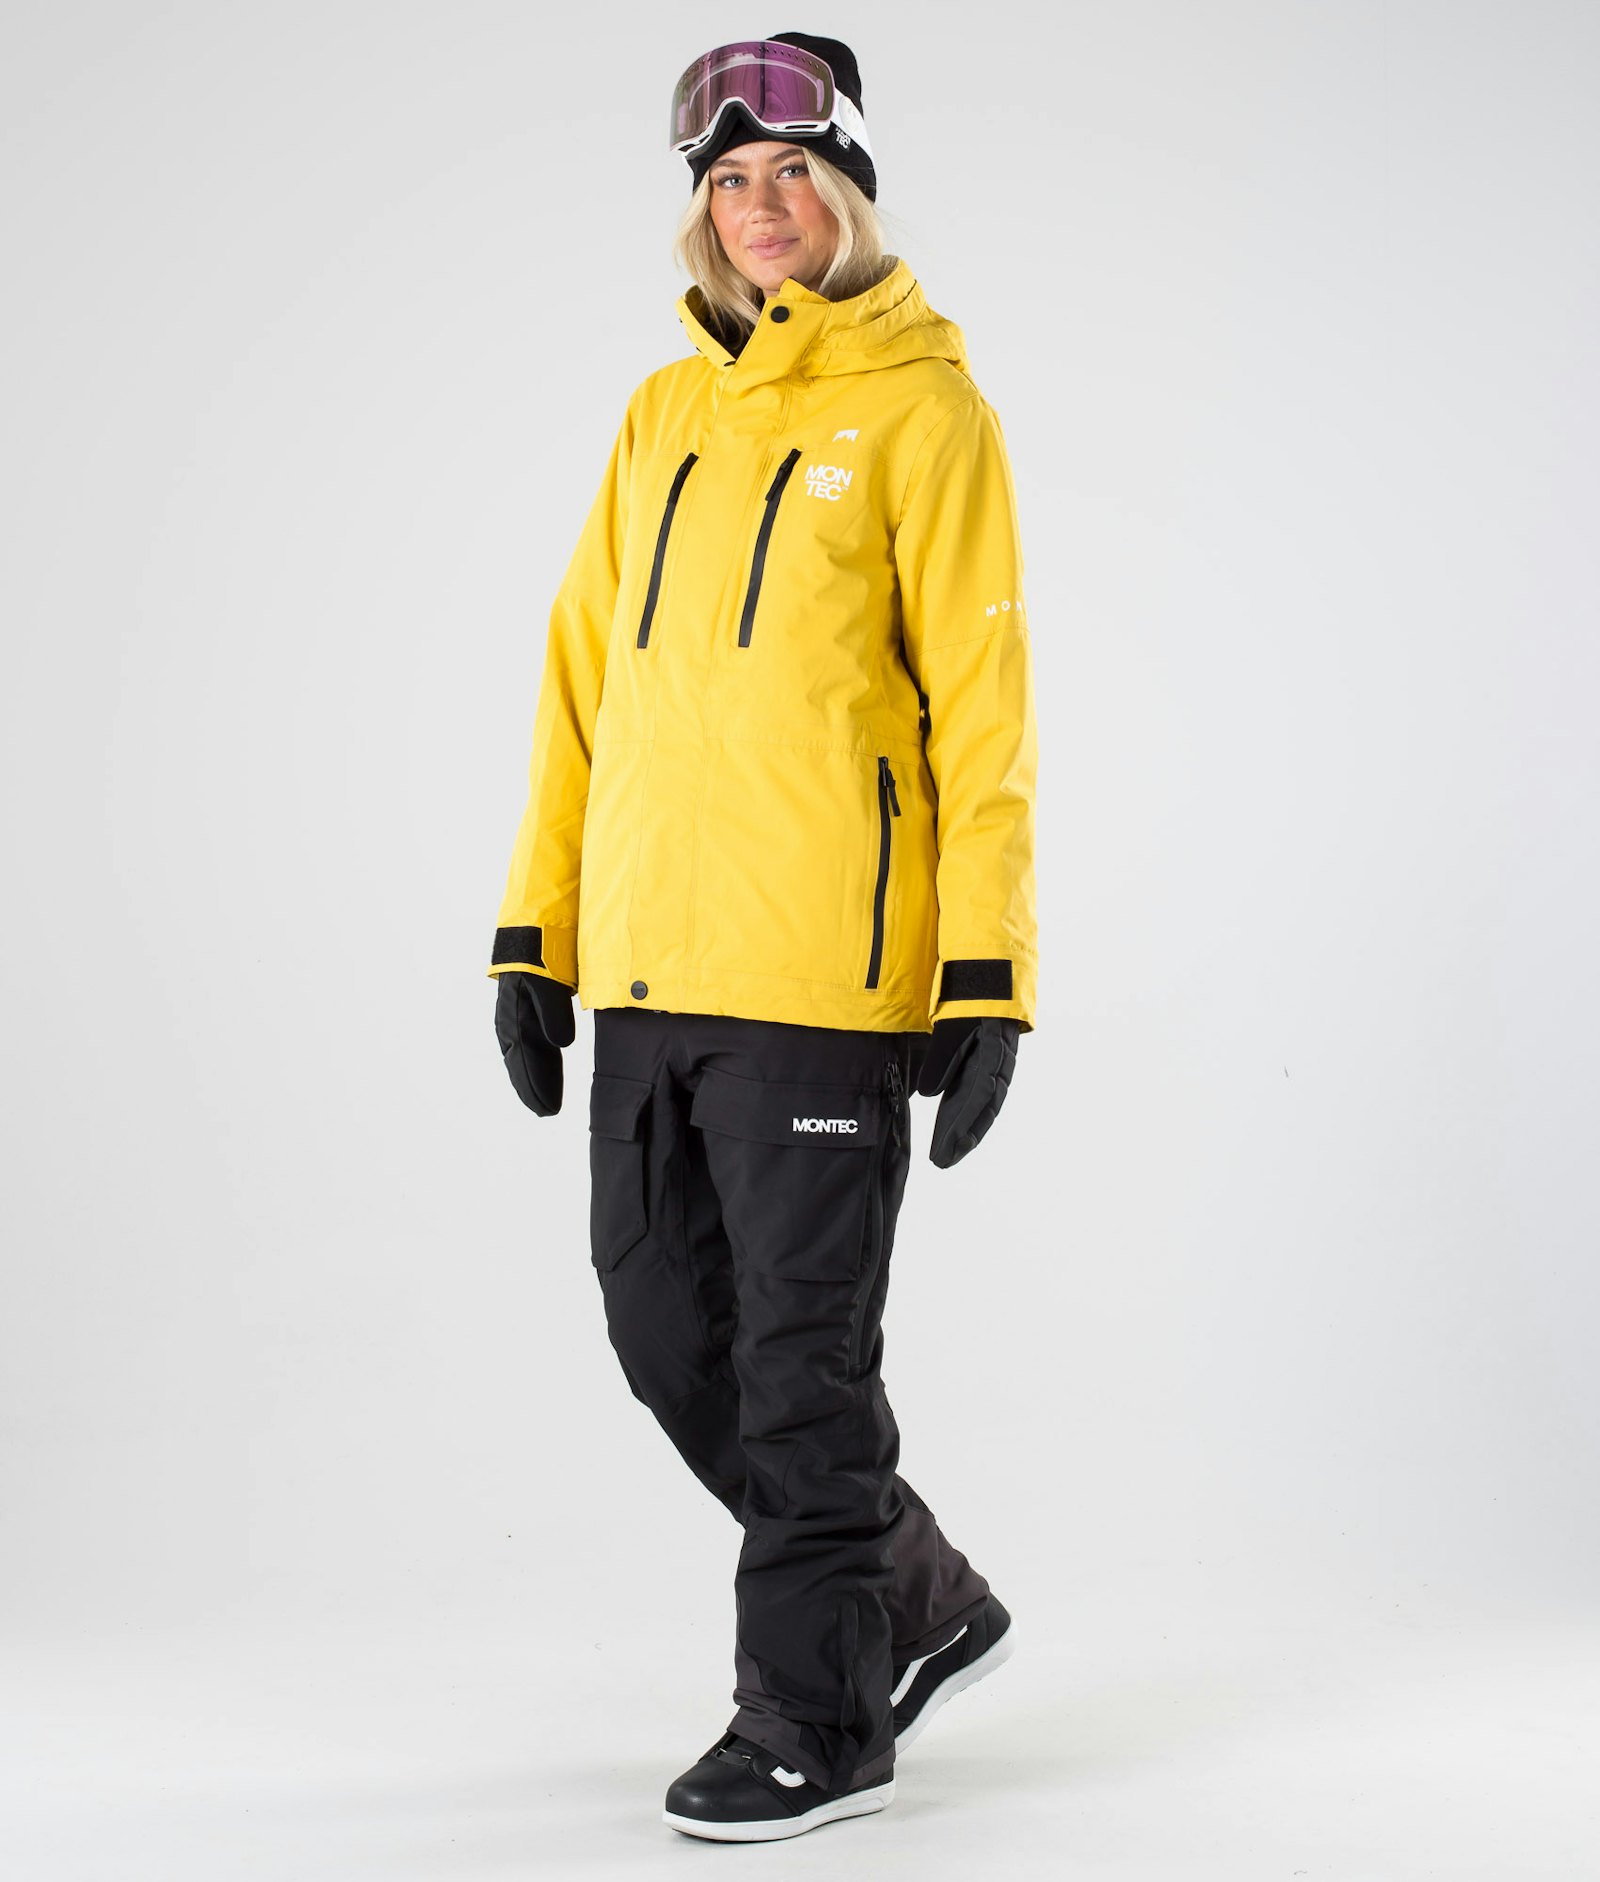 Fawk W 2019 Snowboardjacke Damen Yellow